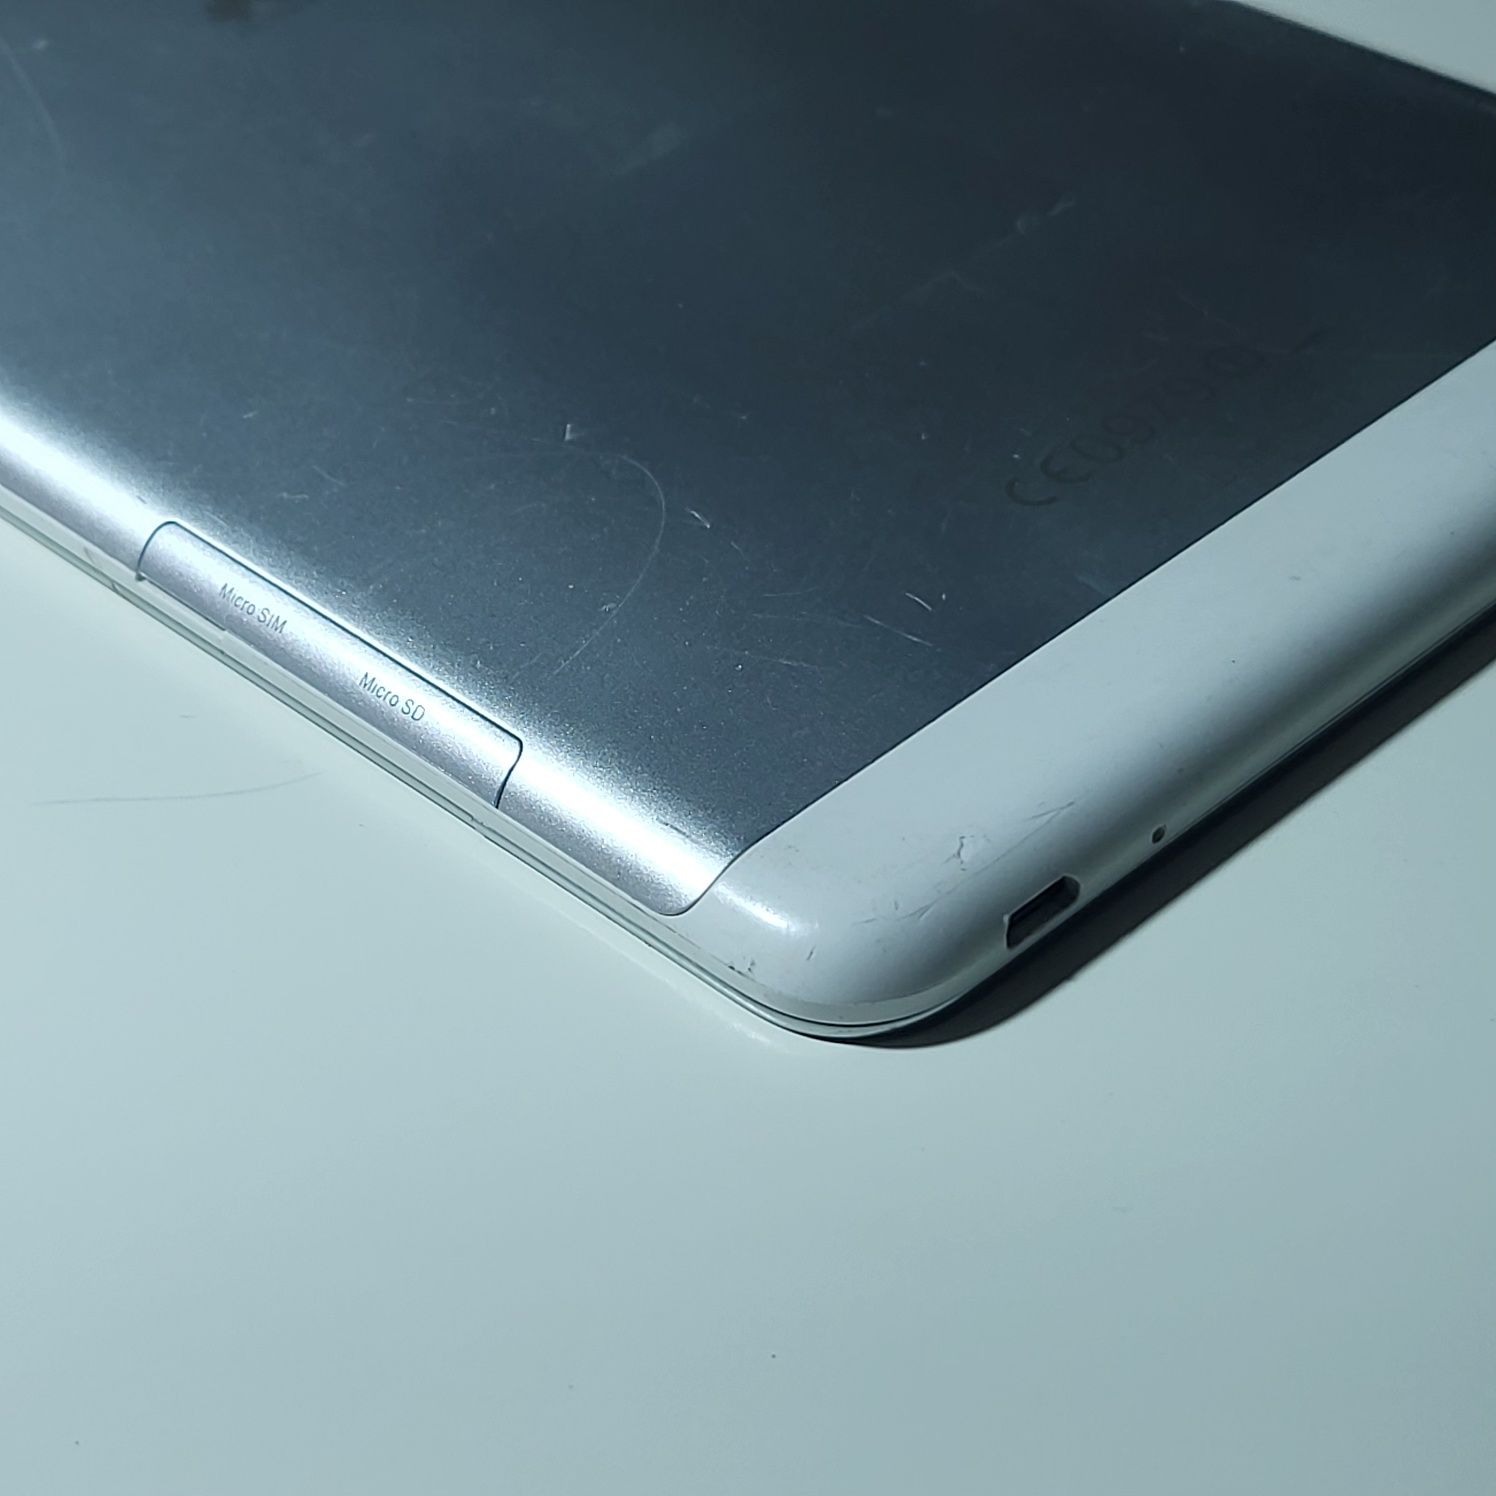 Uszkodzony mini tablet huawei T1-821L